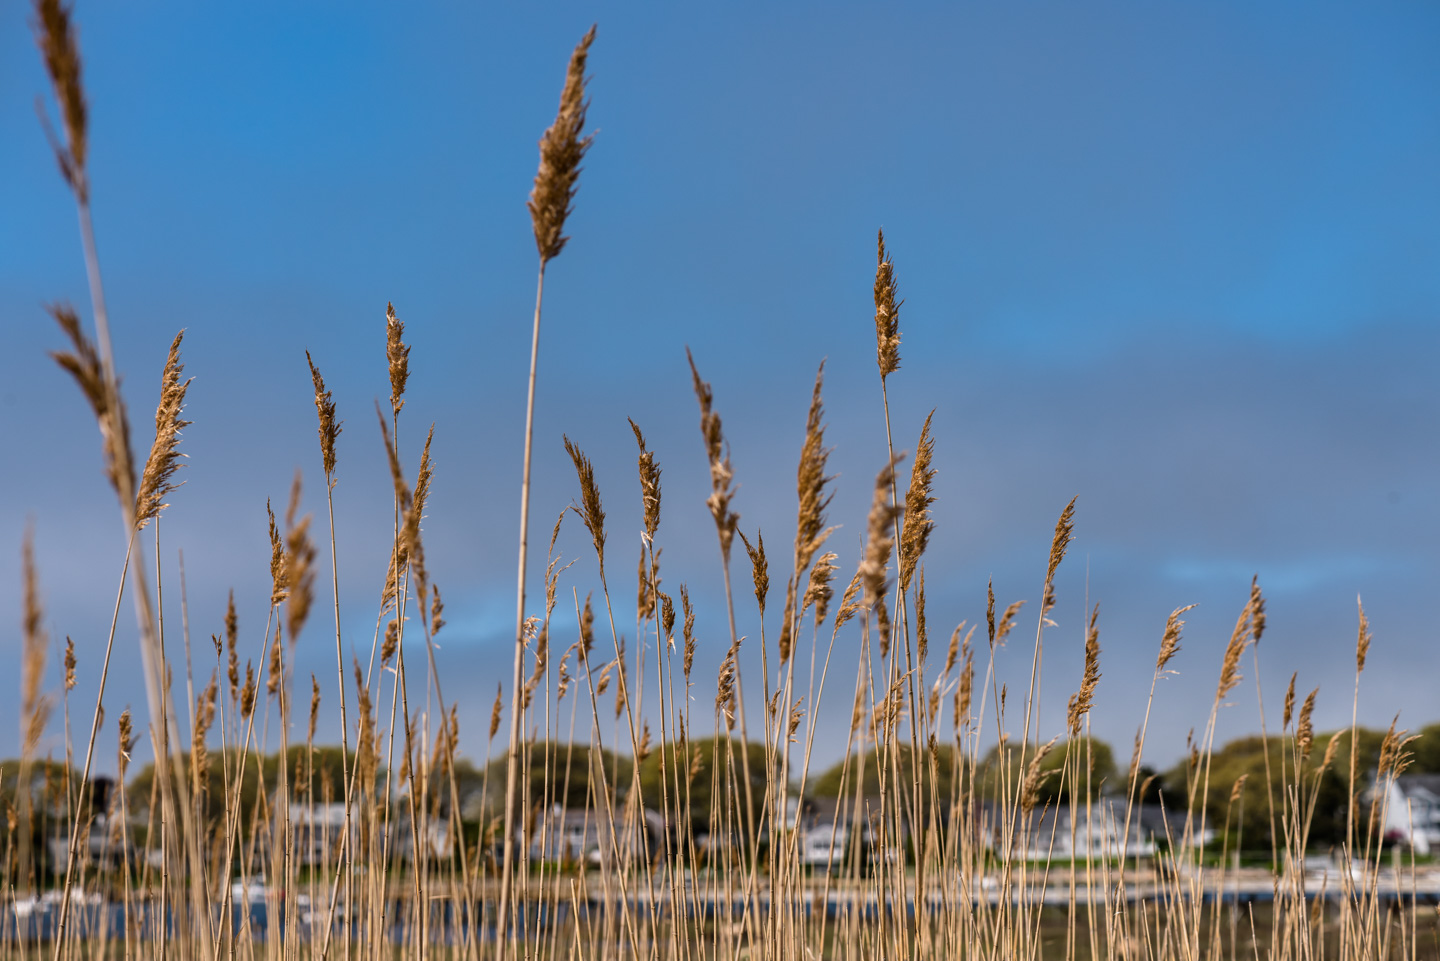 Tall marsh grasses against the sky